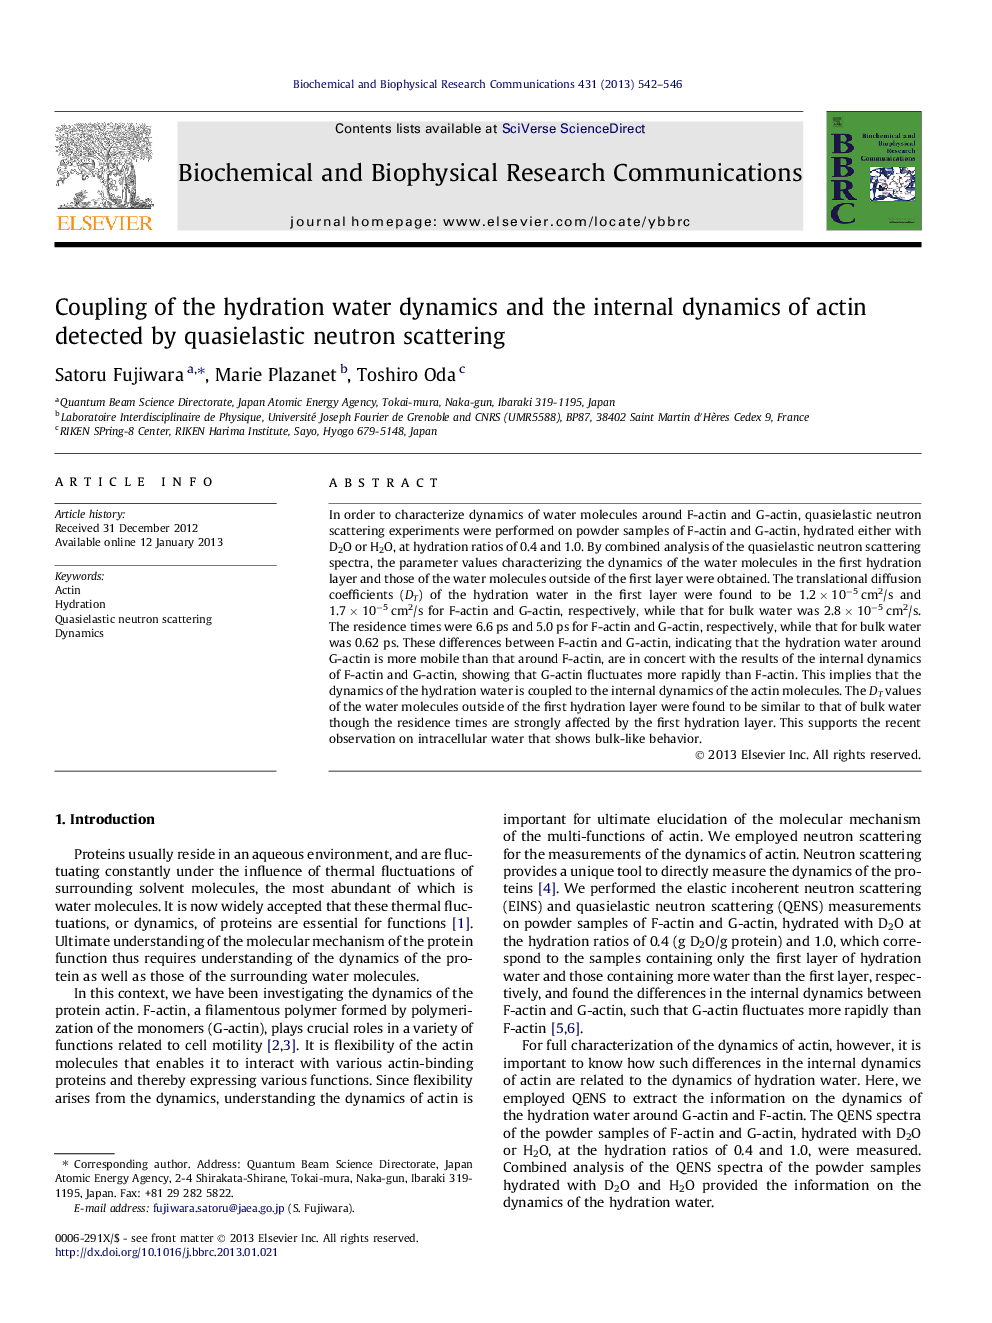 اتصال دینامیک آب هیدراتاسیون و پویایی داخلی آکتین که توسط پراکندگی نوترون های چهارسوالاستیک شناسایی شده است 